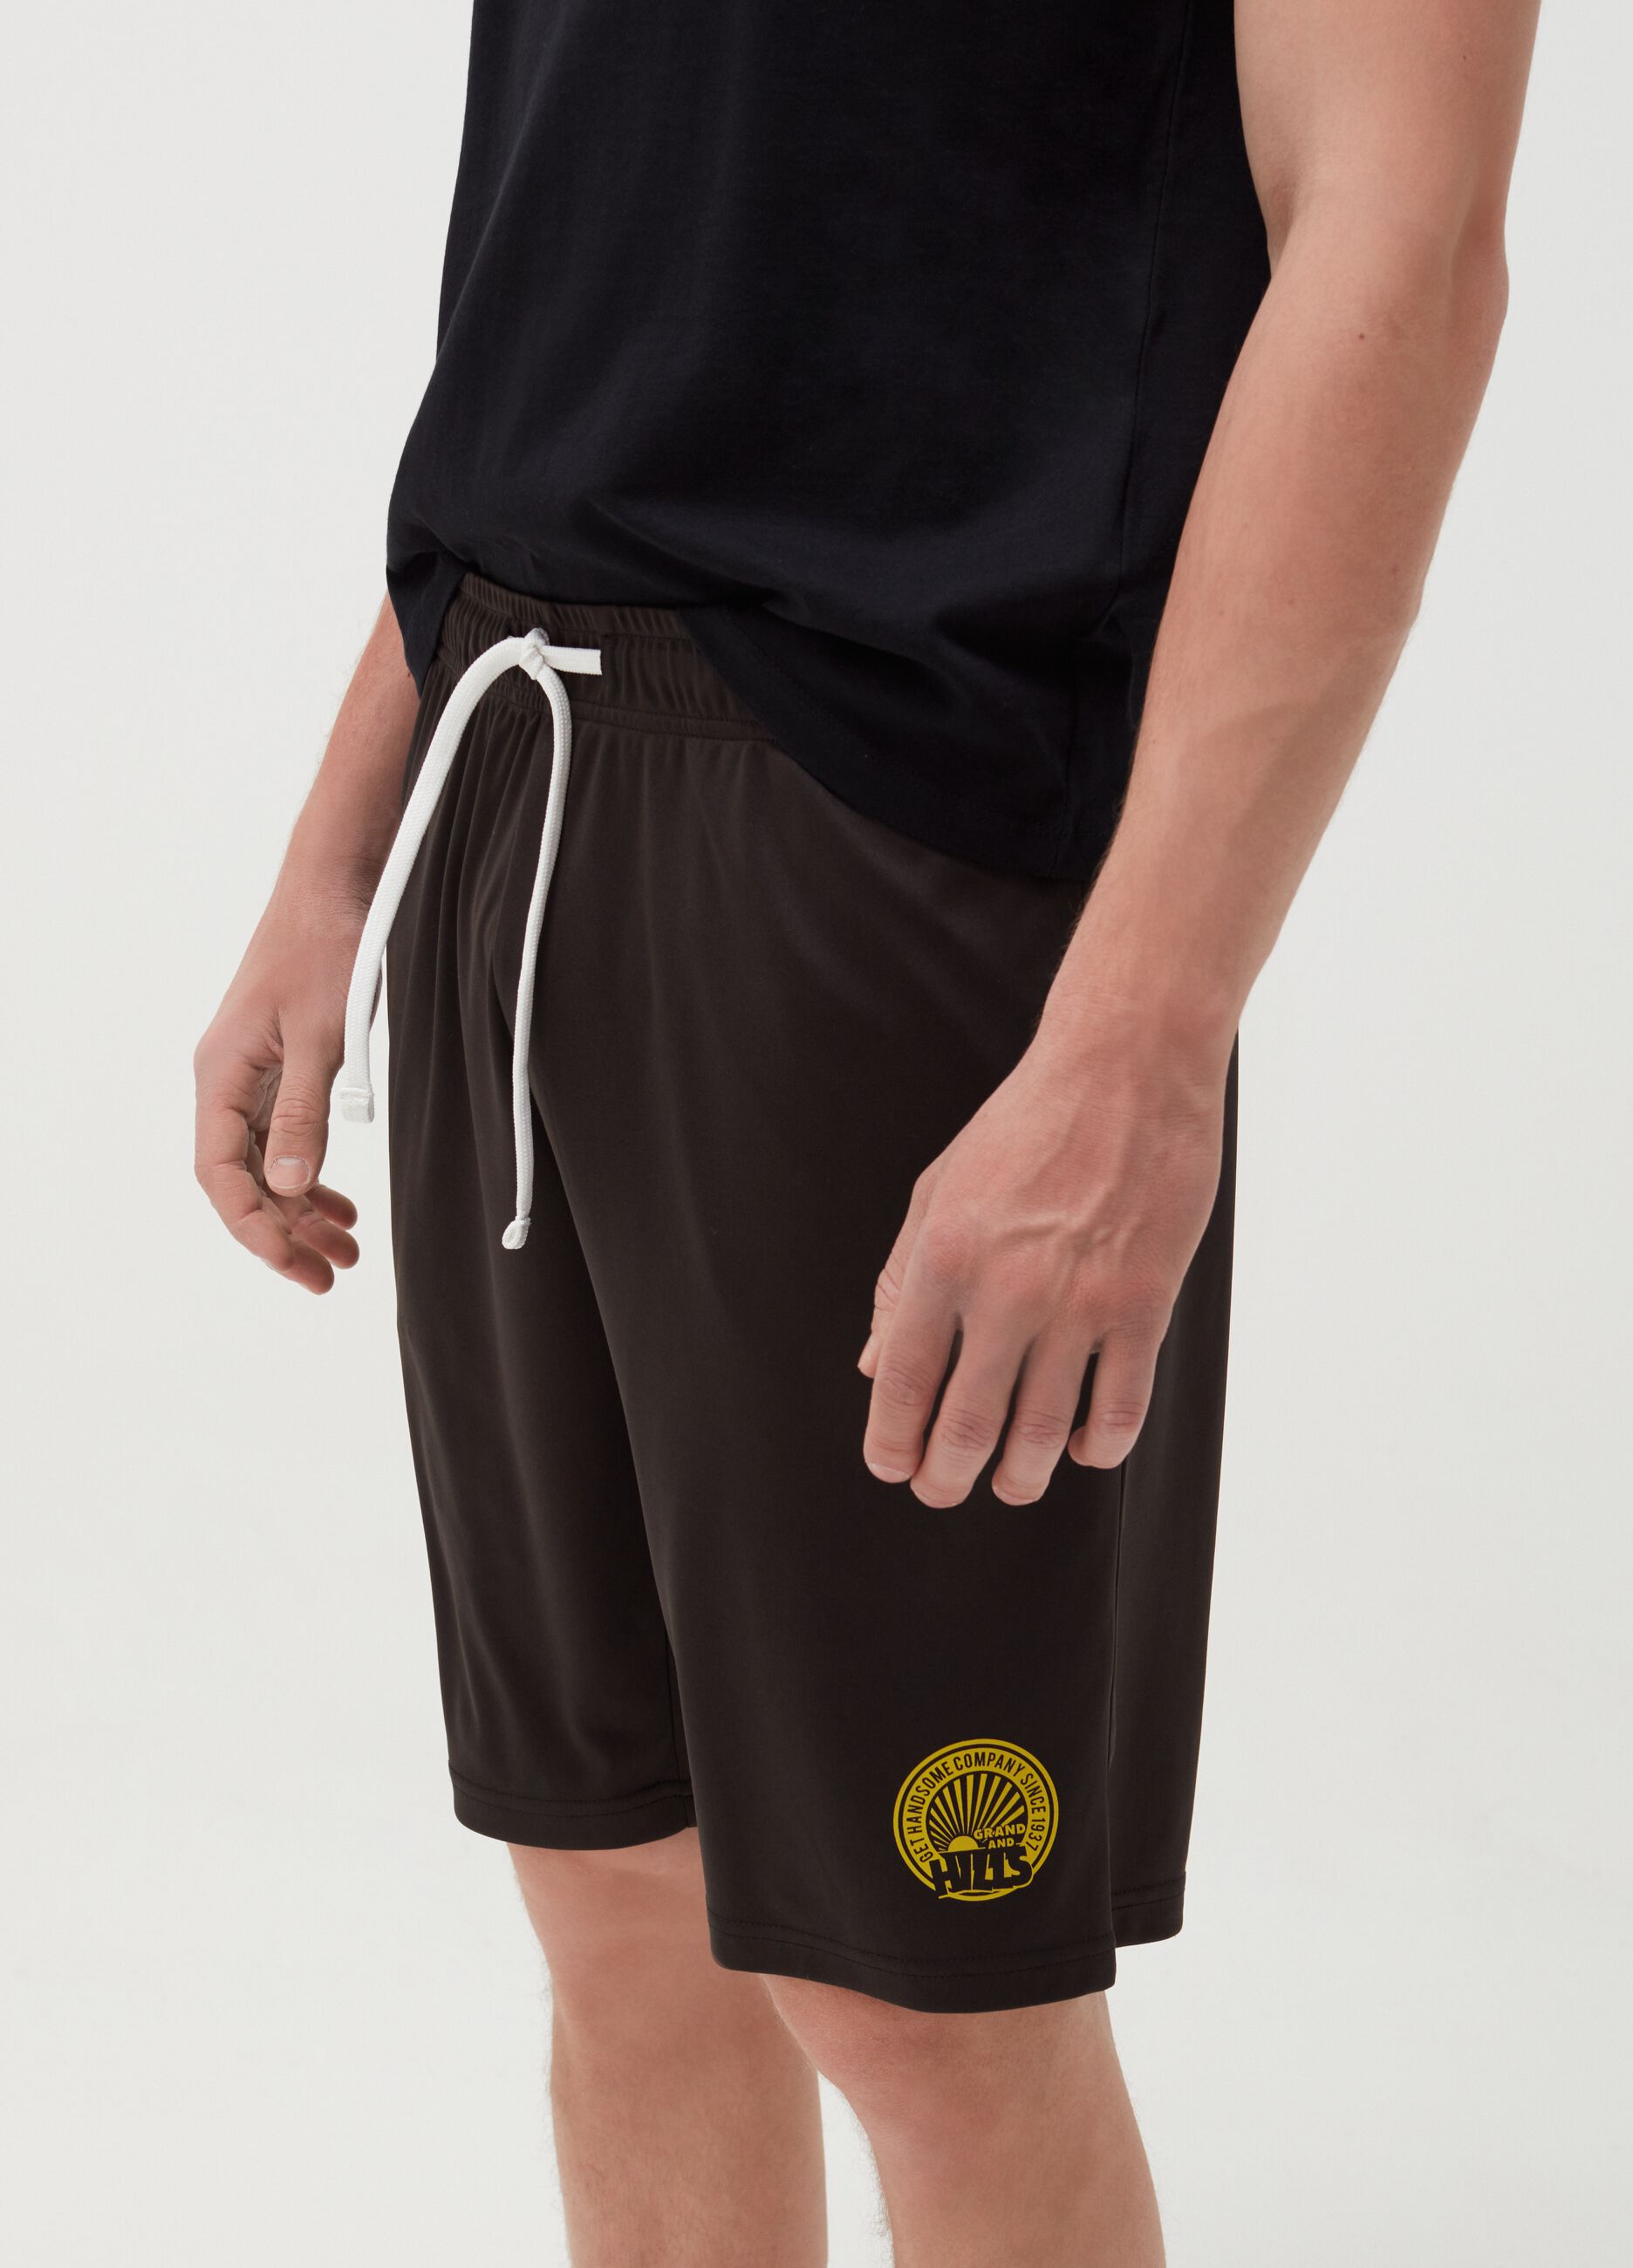 Bermuda shorts with drawstring and logo print